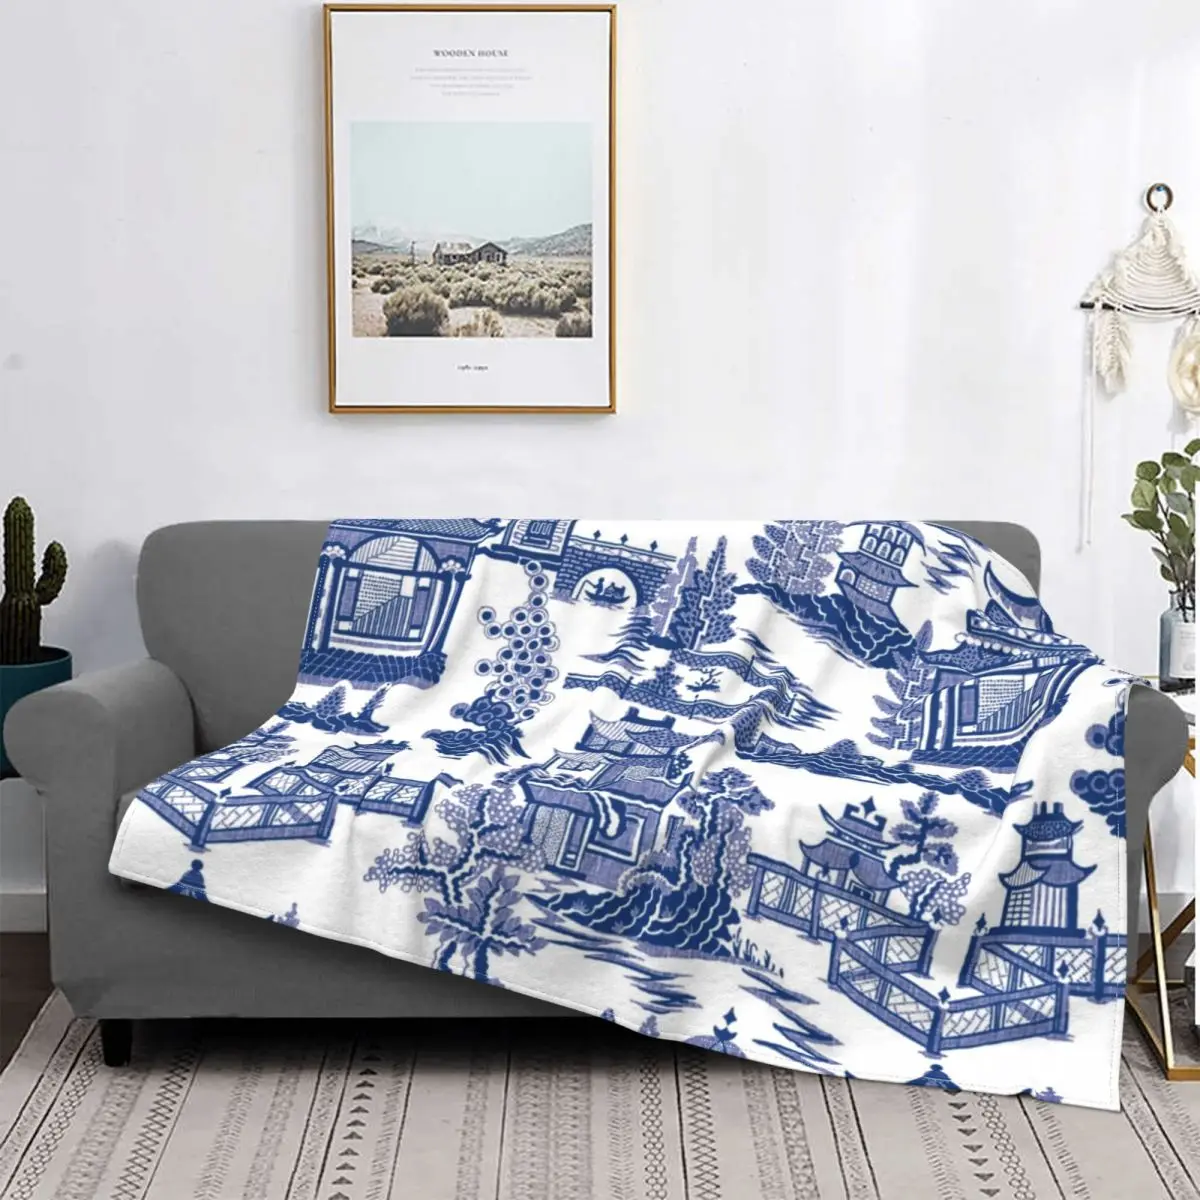 

Китайское пушистое одеяло из синей ивы Ming, сине-белое забавное диванное одеяло для дома, гостиницы, дивана 200x150 см